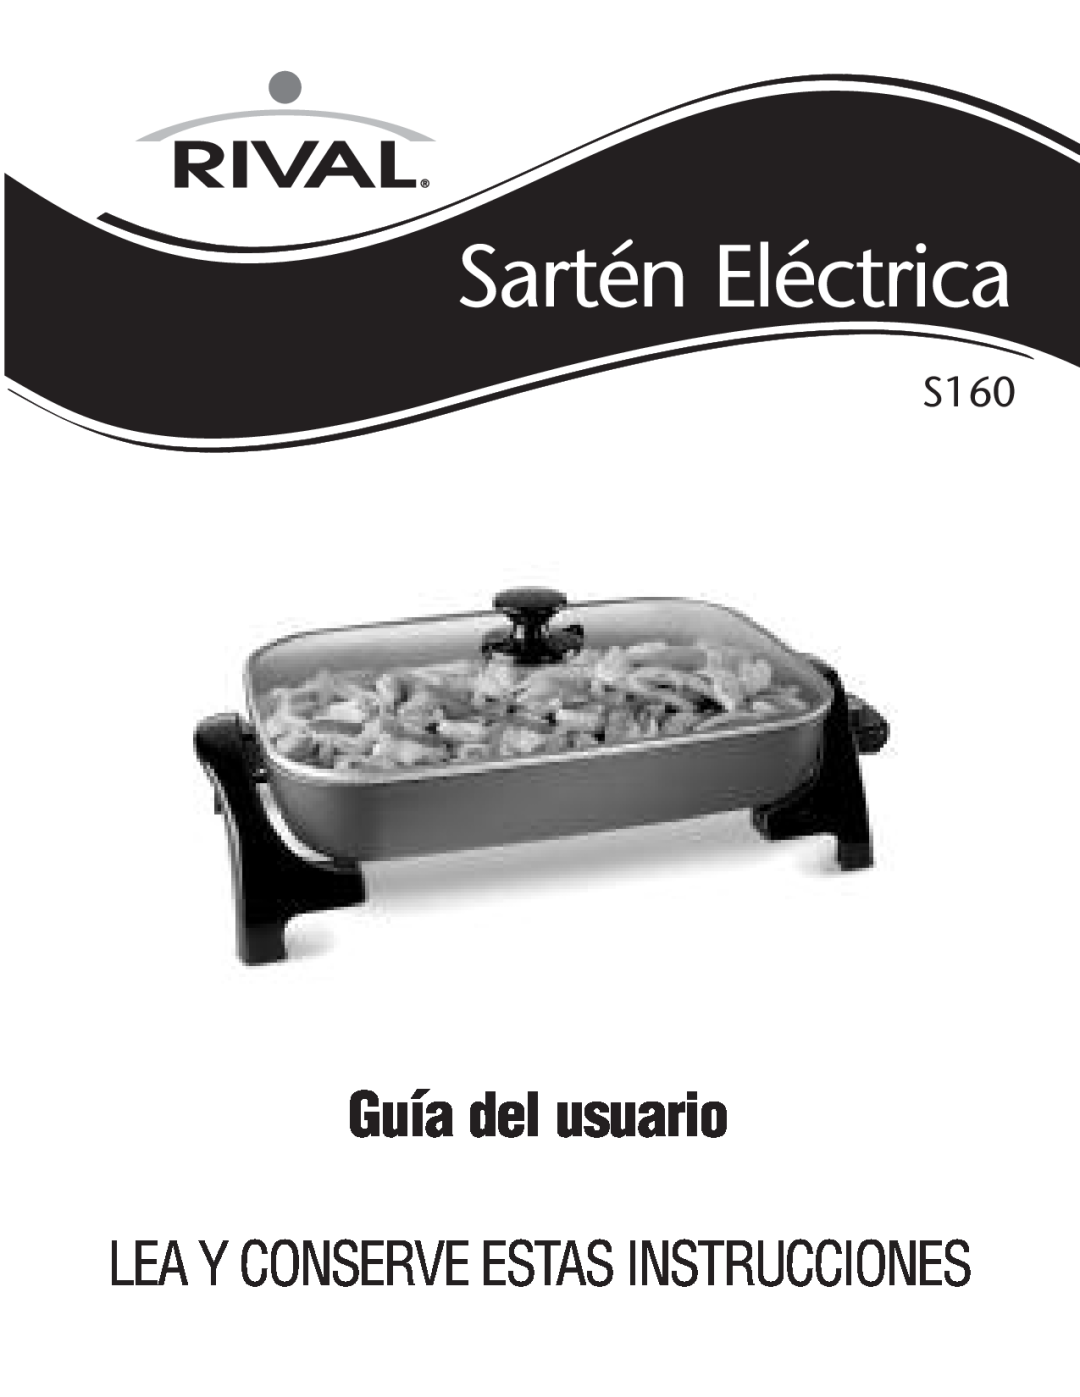 Rival S160 manual Guía del usuario, Sartén Eléctrica, Leay Conserveestasinstrucciones 